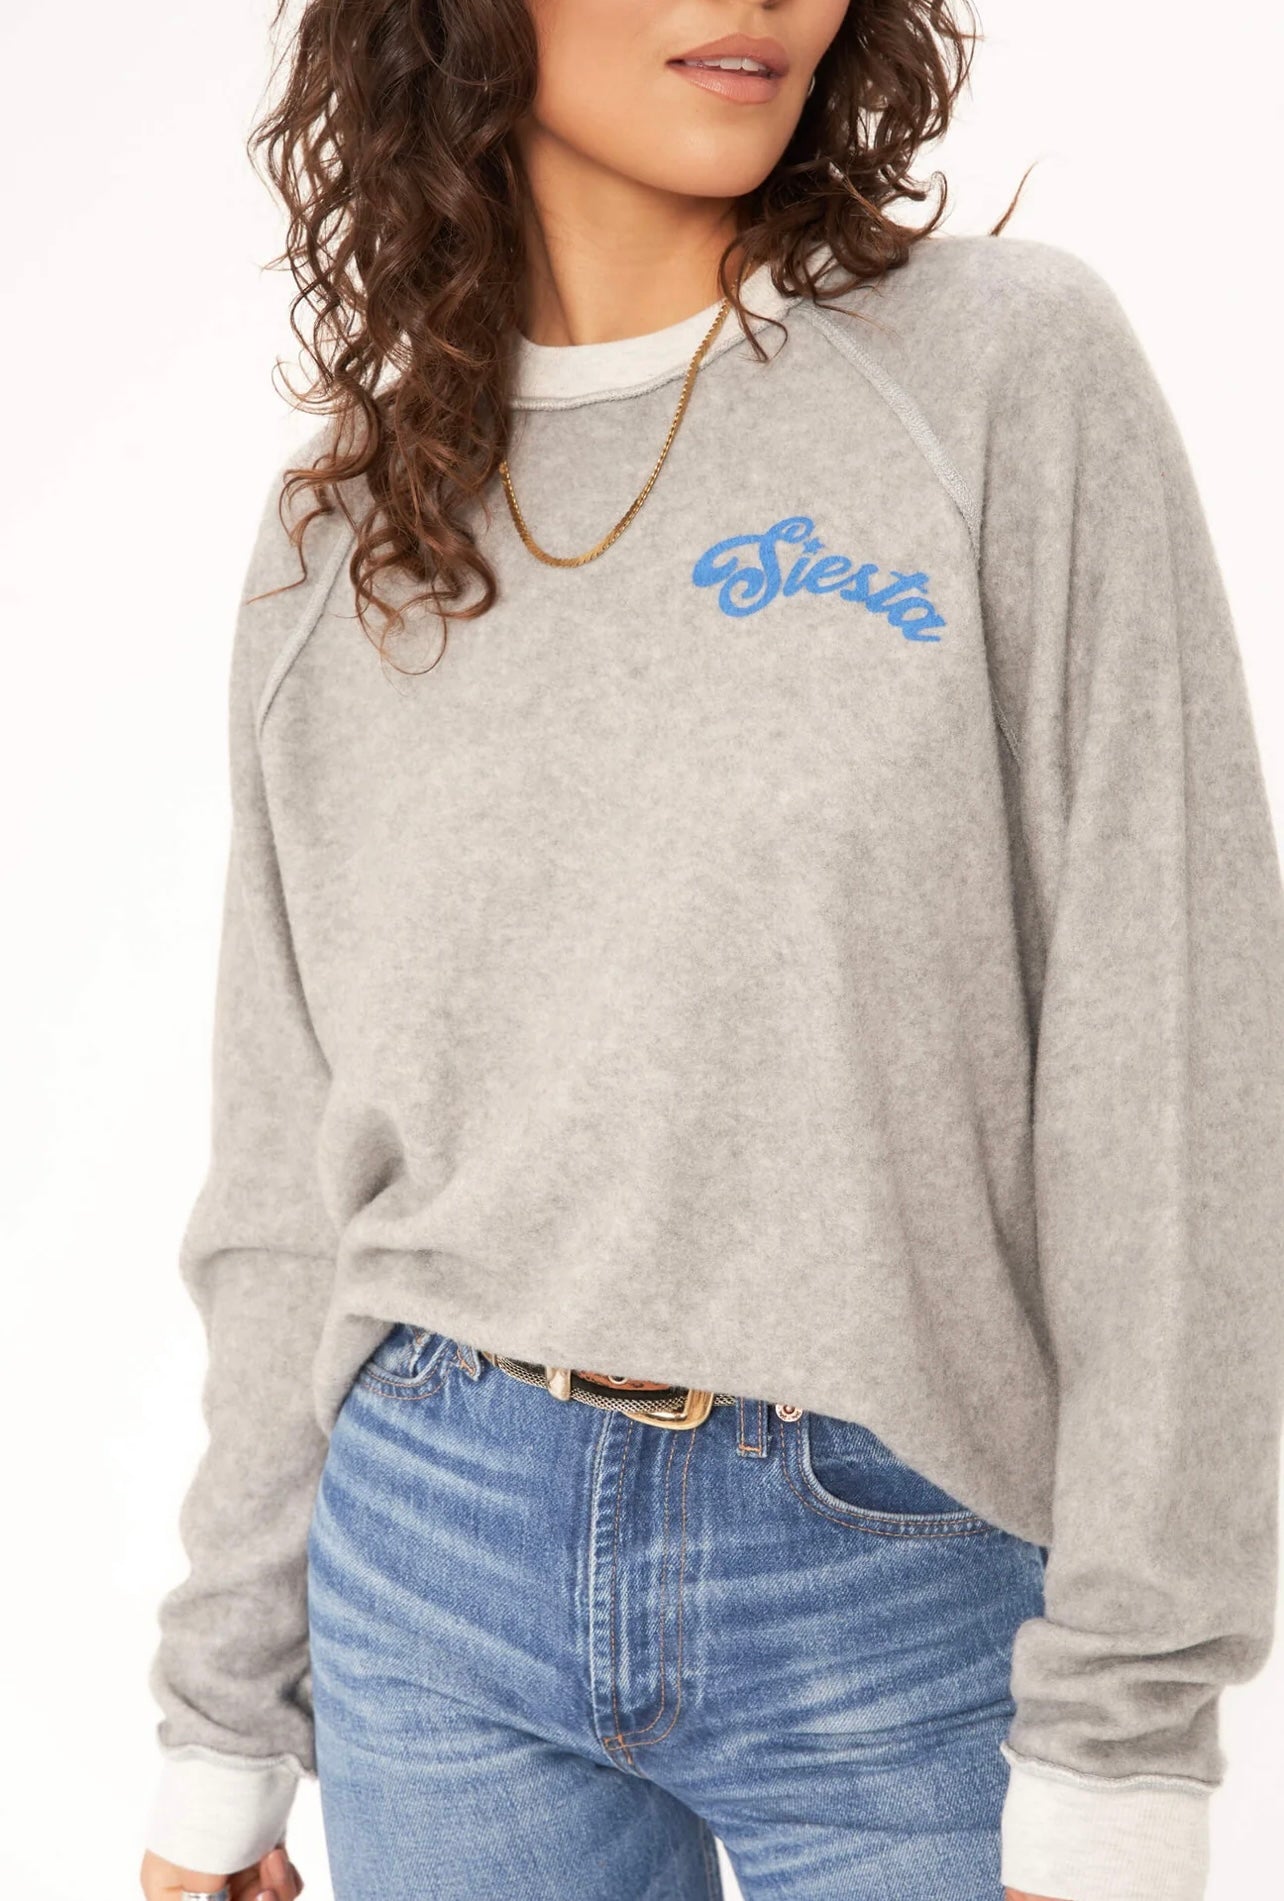 Grey Fiesta/Siesta reversible sweatshirt